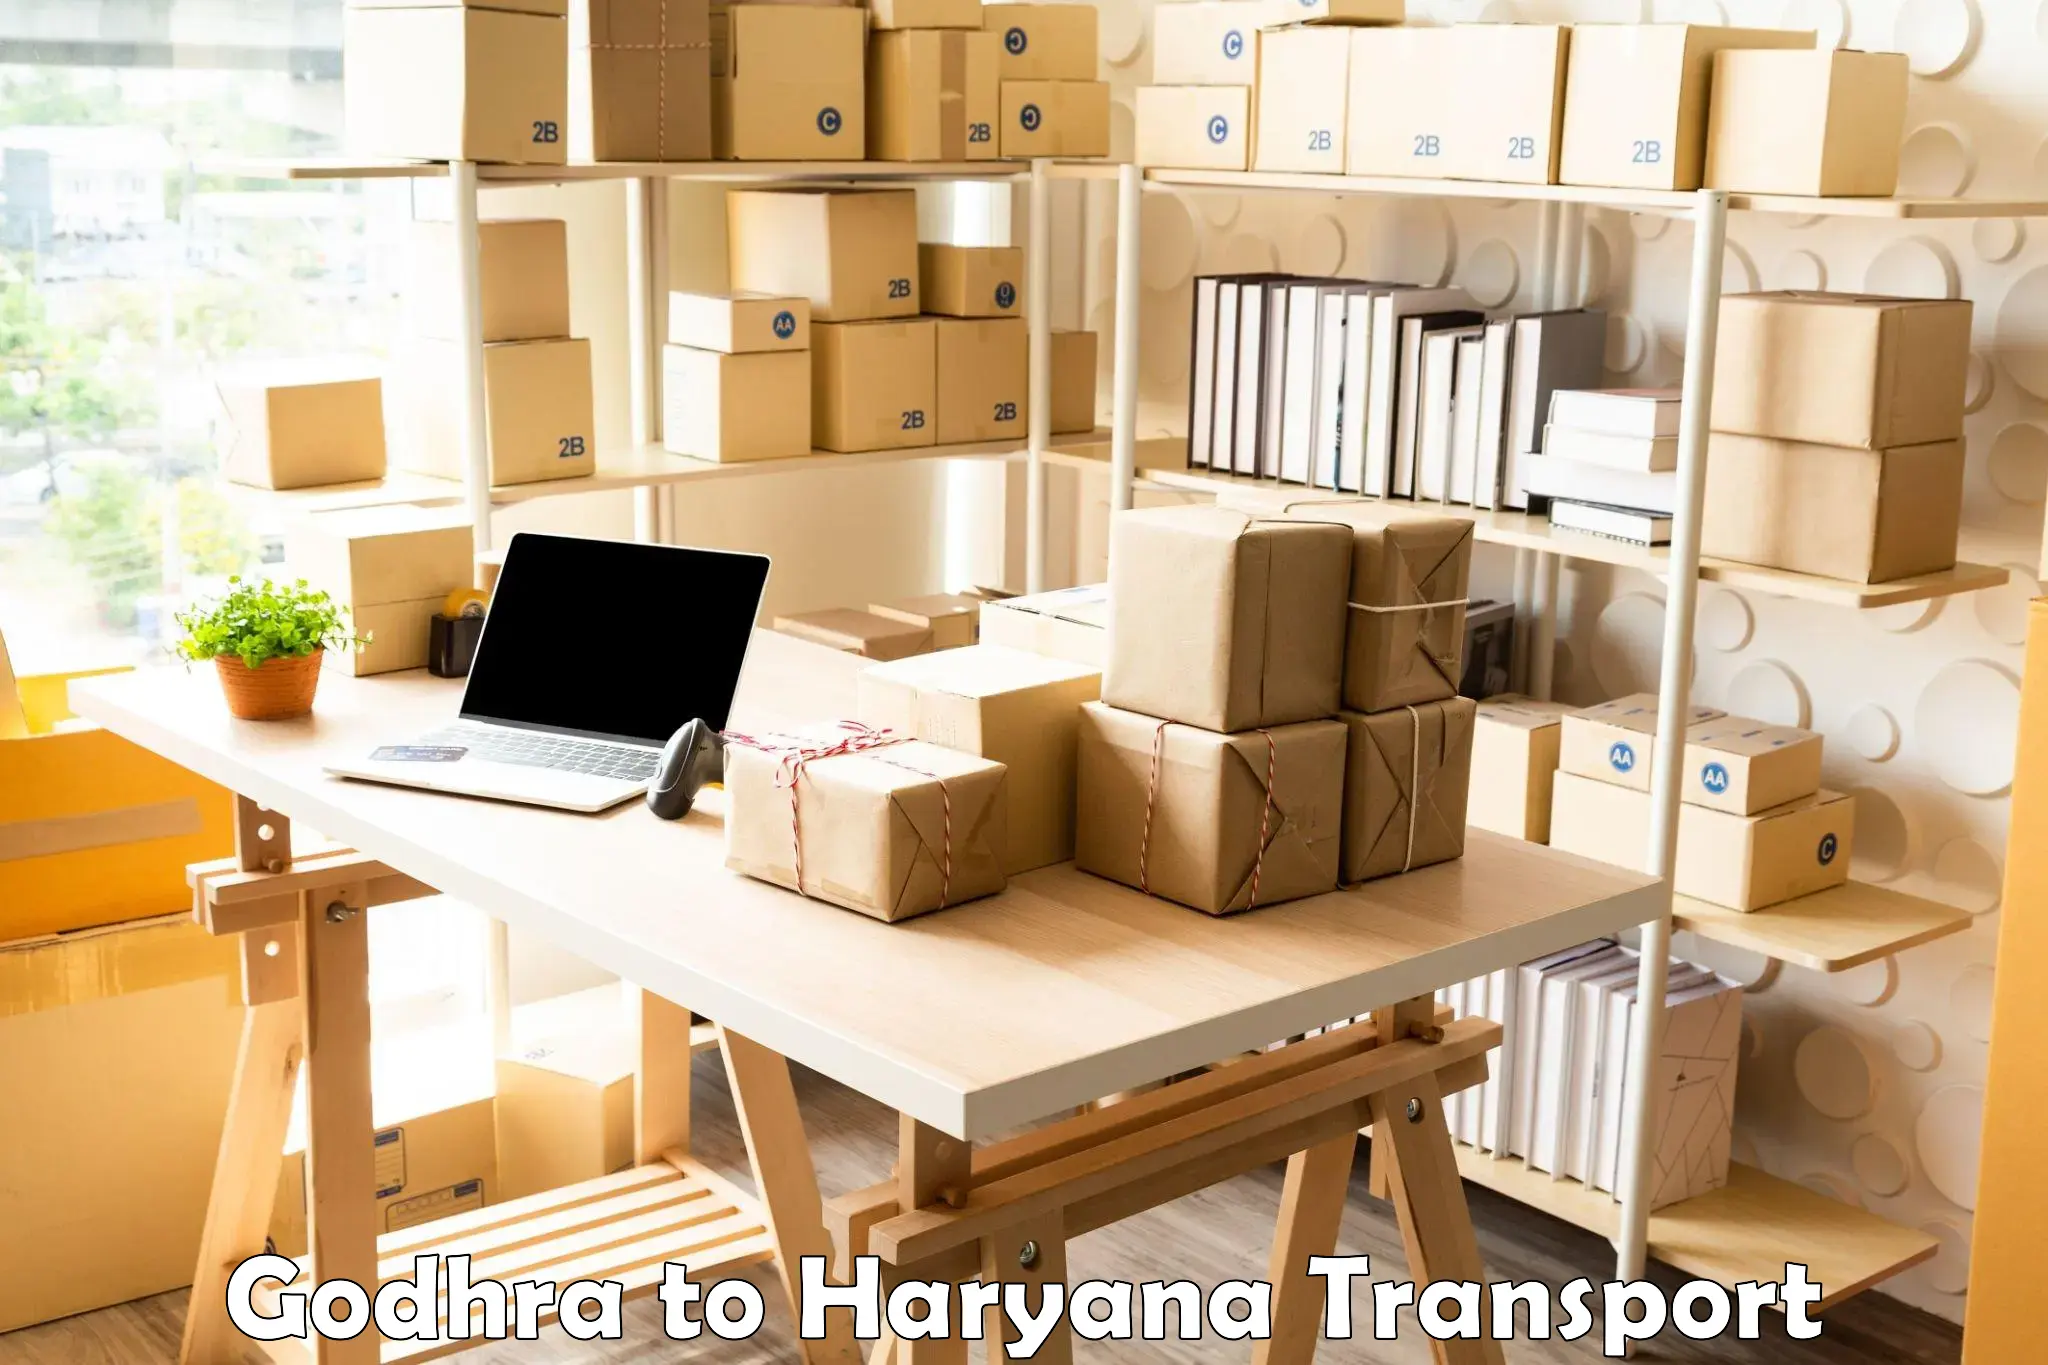 International cargo transportation services Godhra to Shahabad Markanda